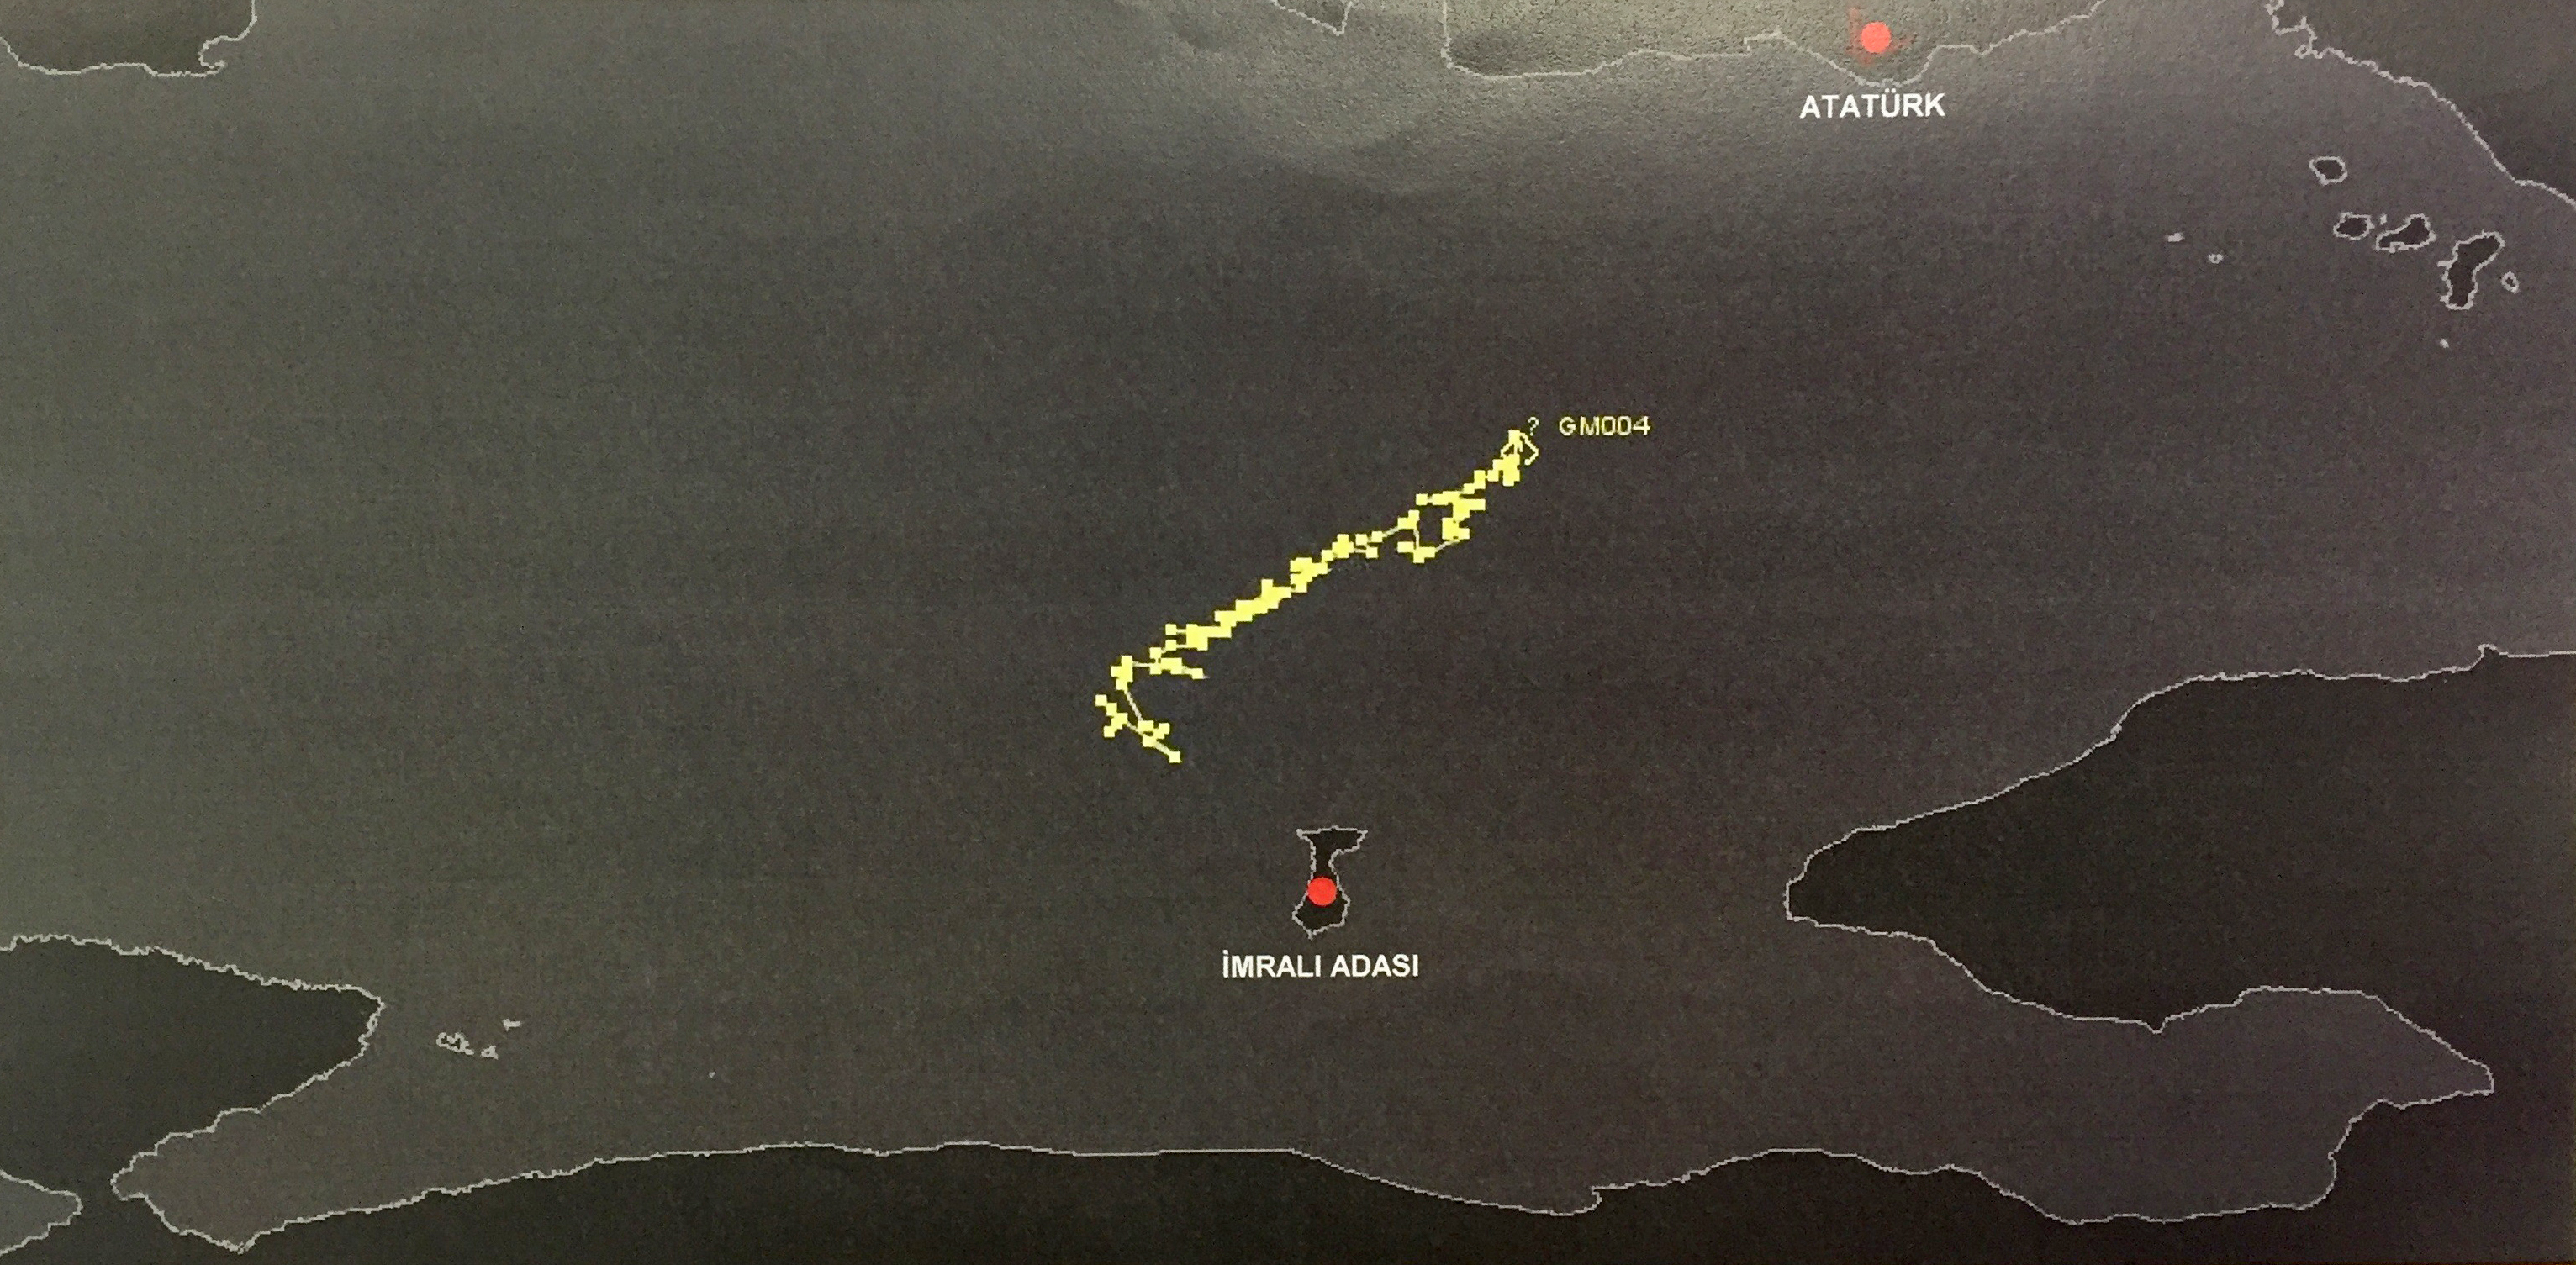 تمّ إثبات تحليق الطائرات المروحية بكثافة في محيط جزيرة إيمرالي. وظهرت تسجيلات لمروحيات مختلفة وهي تحلق فوق جزيرة إيمرالي في توقيتات مختلفة.